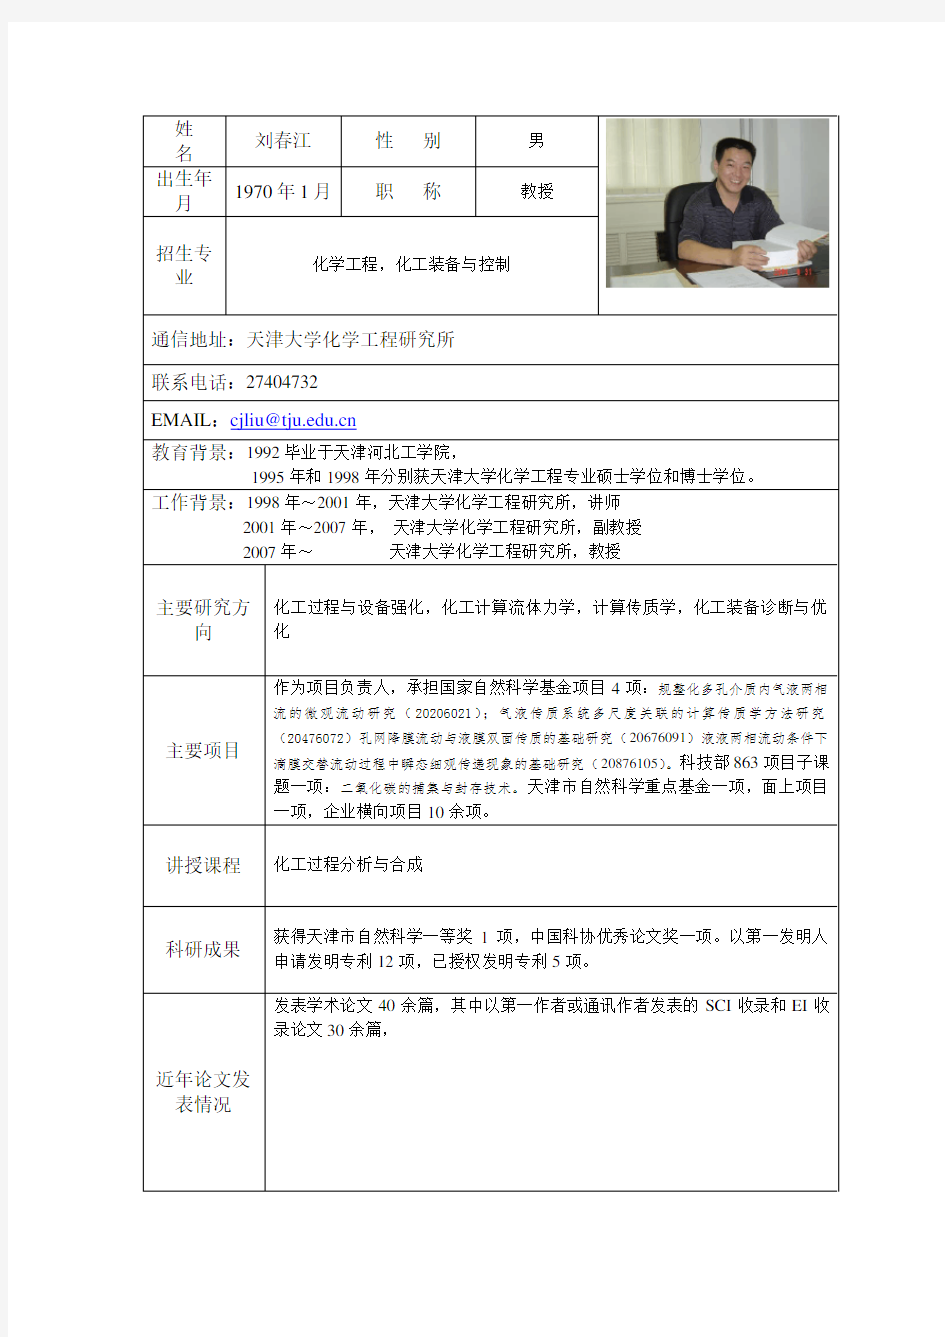 天津大学化工过程机械 导师 近似 导师简介(刘春江)